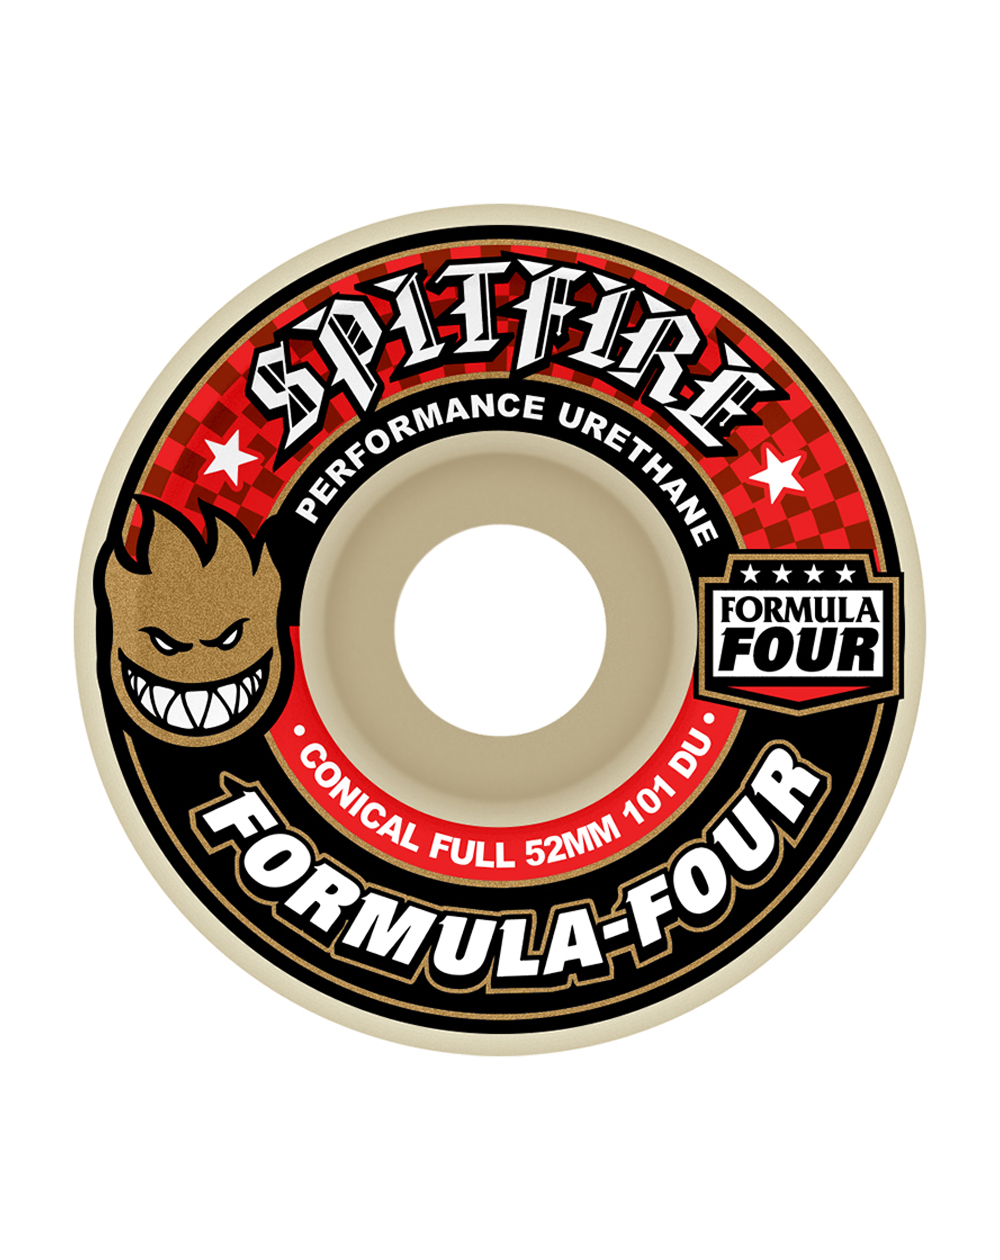 Spitfire Ruedas Skateboard Formula Four Conical Full 52mm 101A 4 piezas